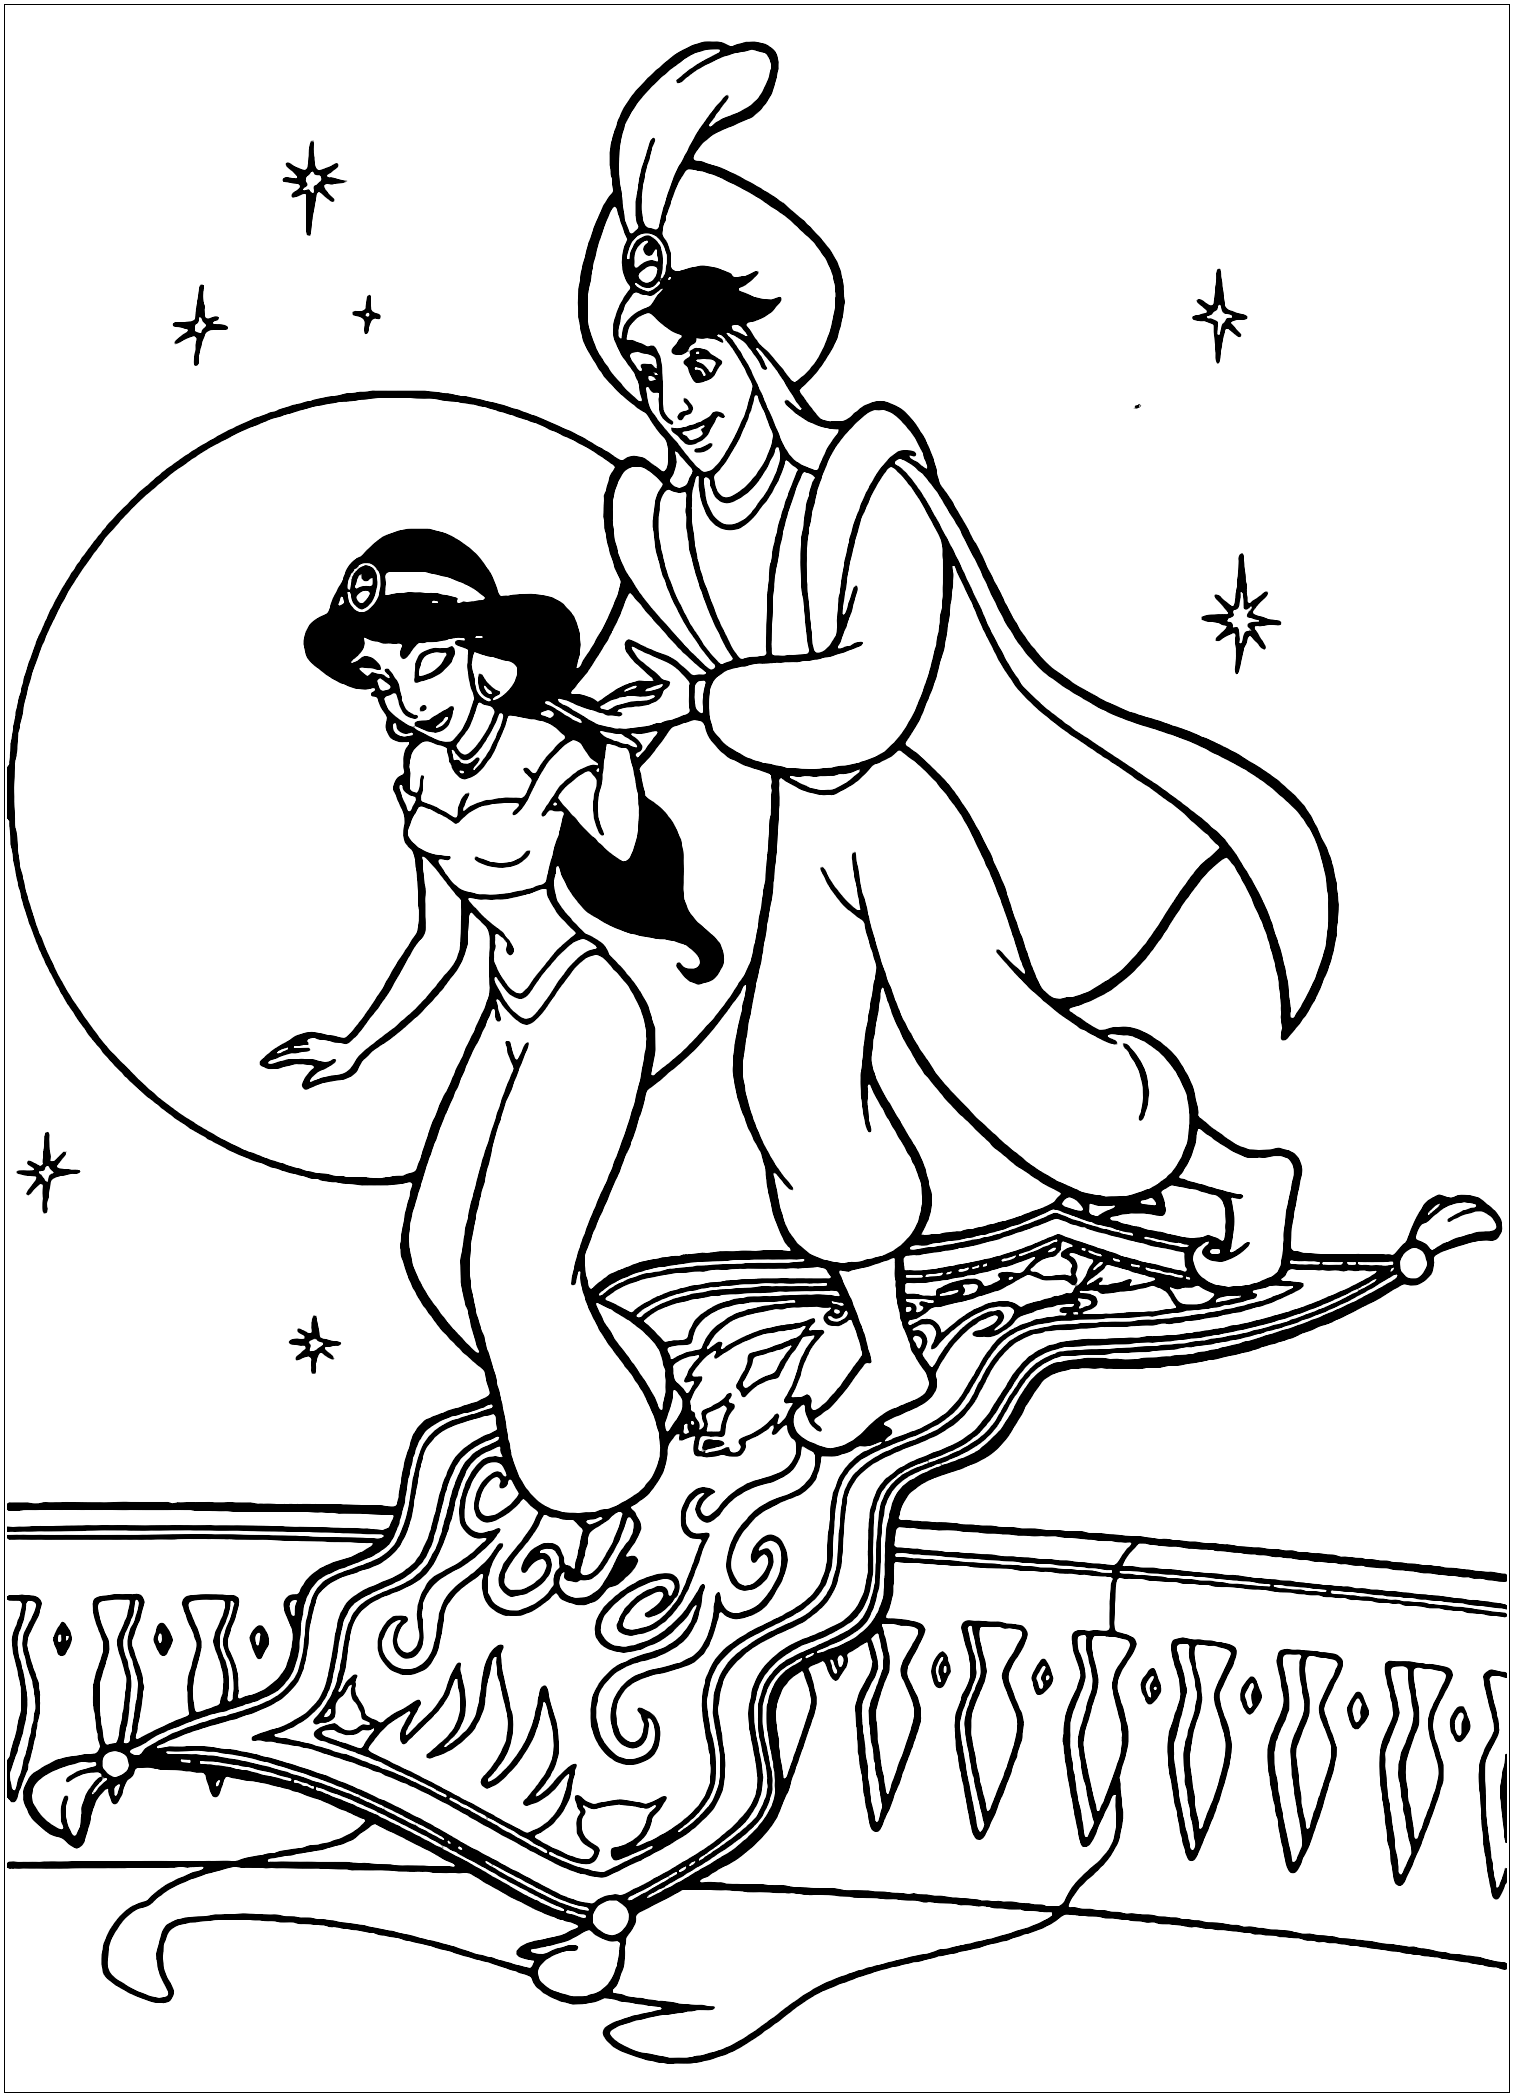 Aladino e Jasmine regressam da sua viagem num tapete mágico